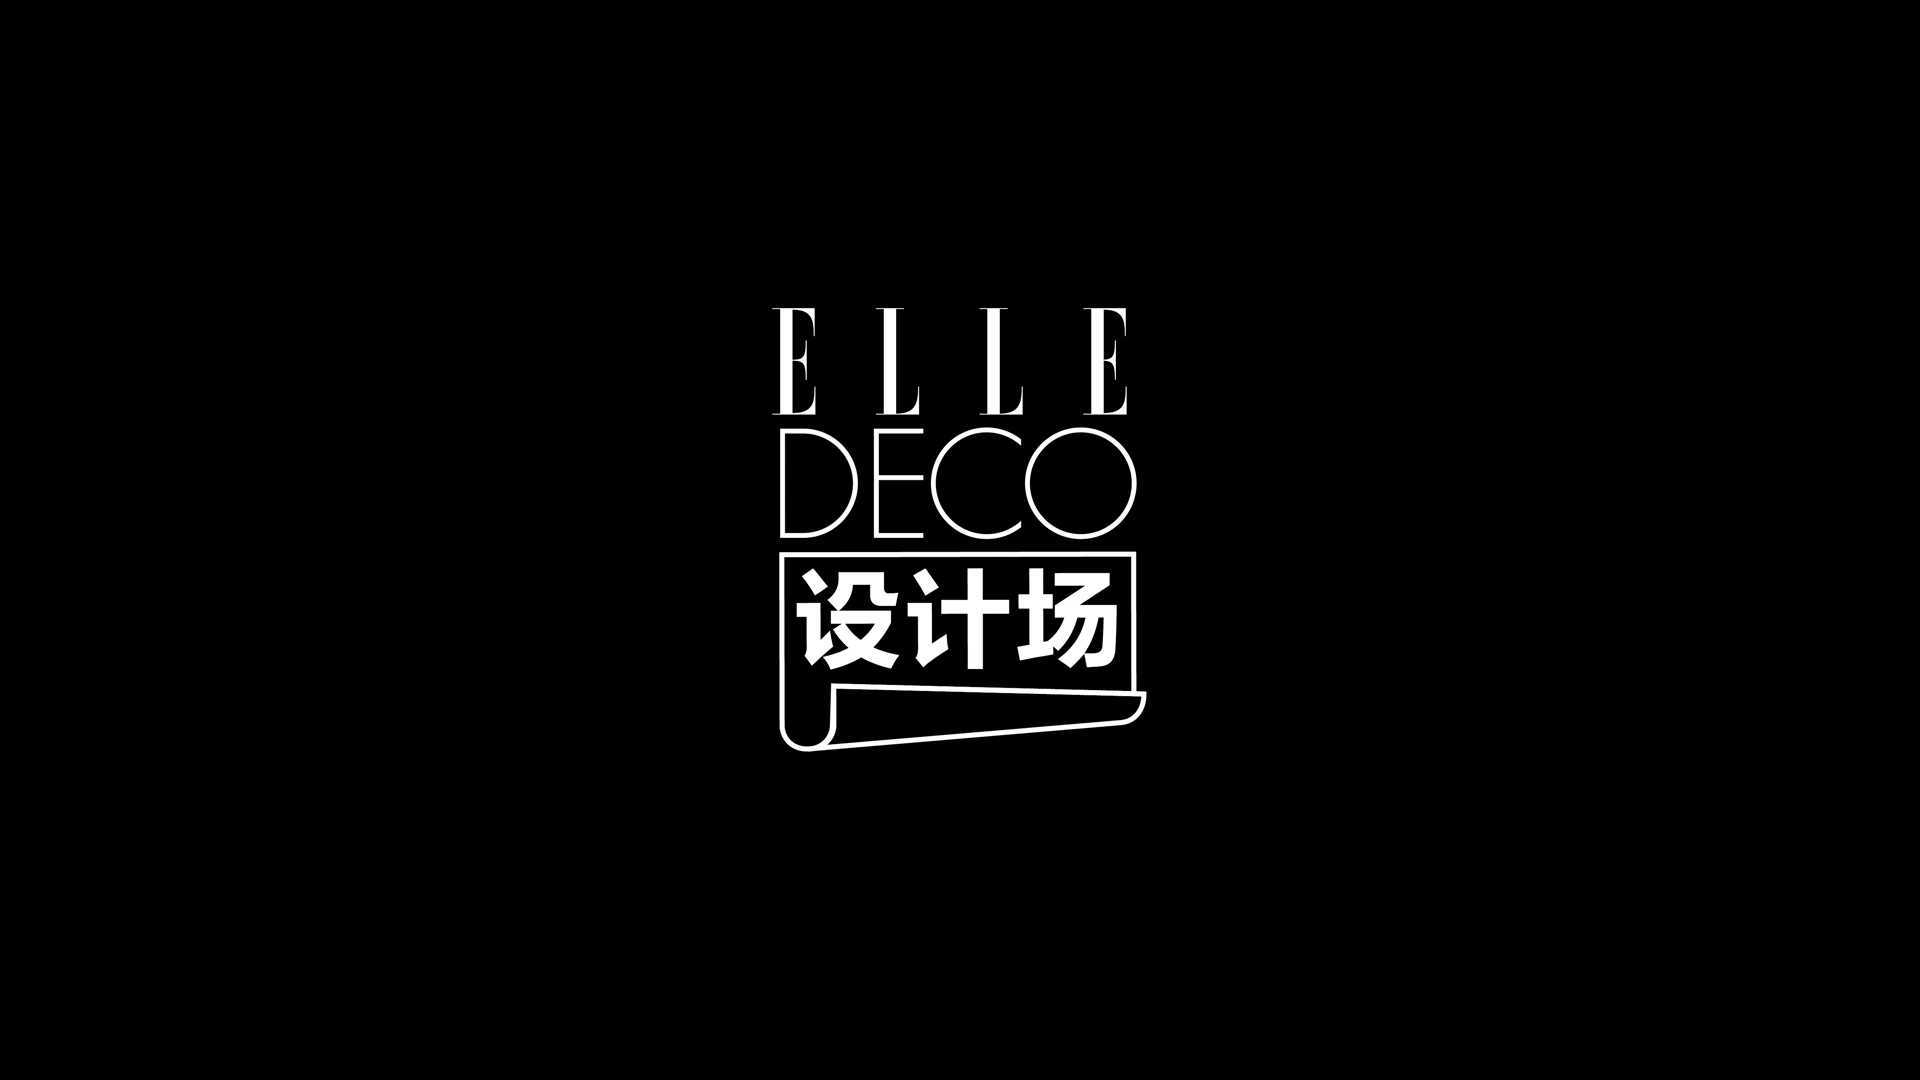 ELLE DECO 设计场 吴滨